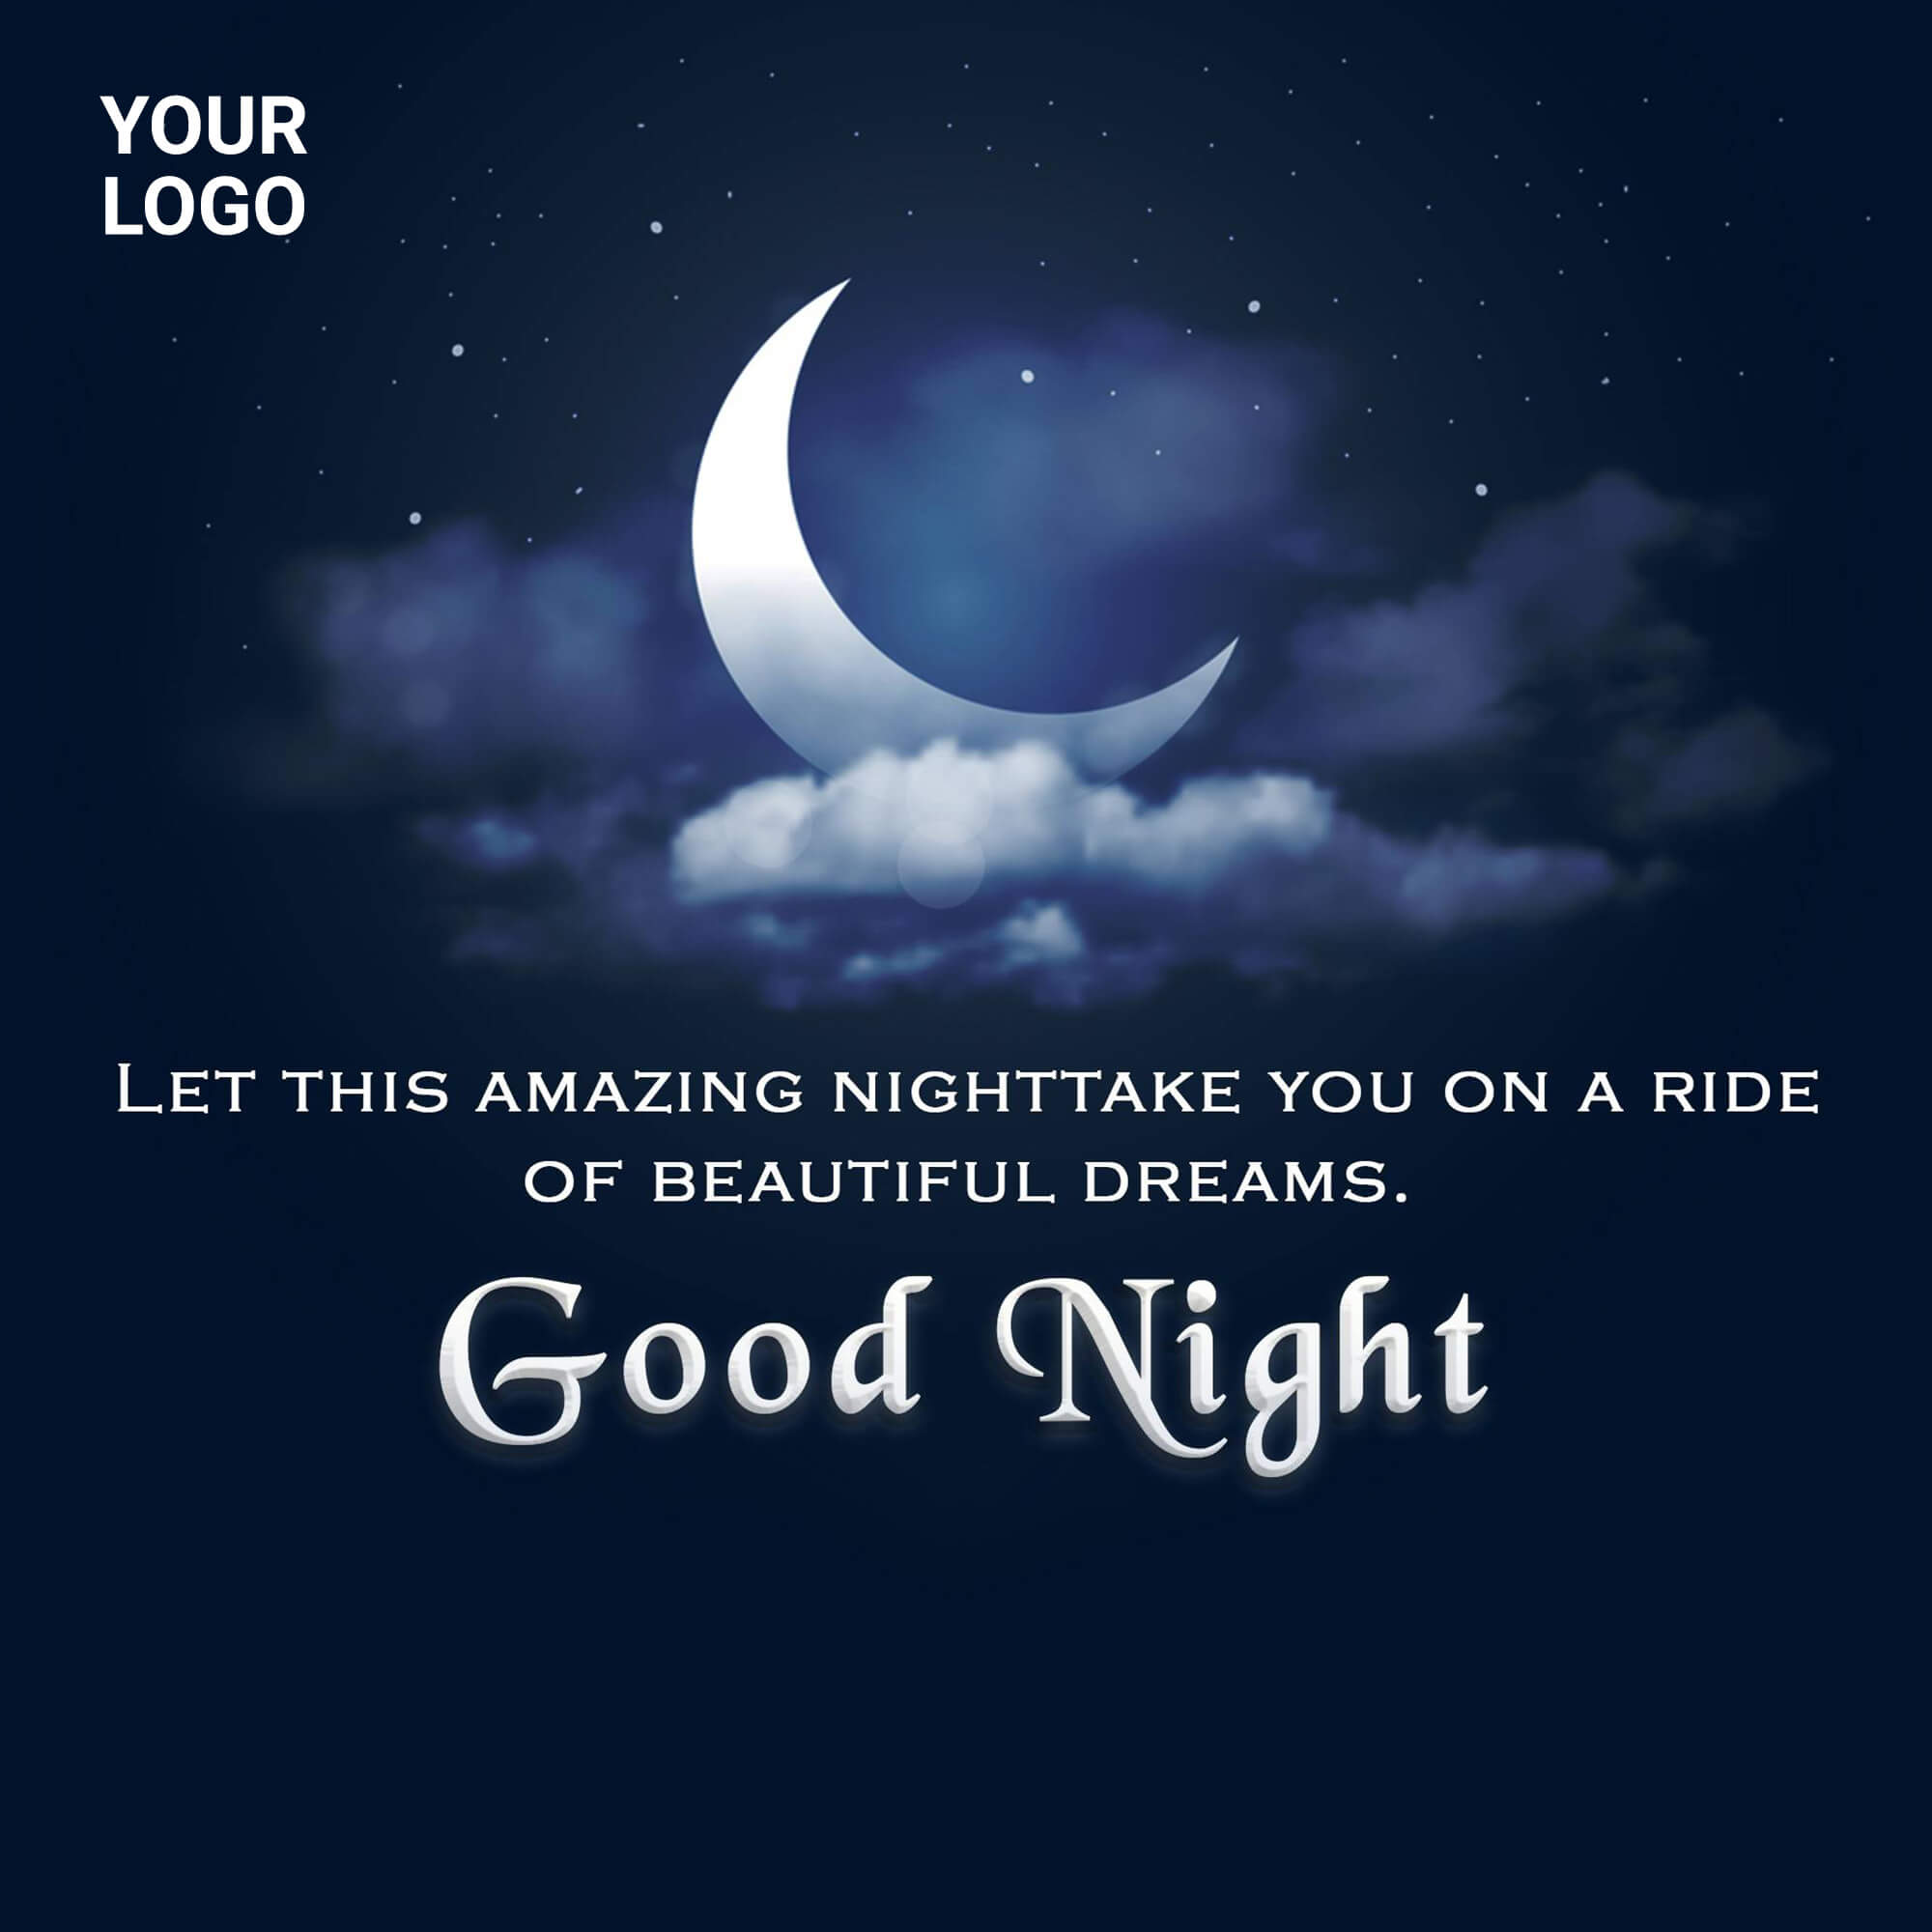 Good Night Marketing Poster Maker